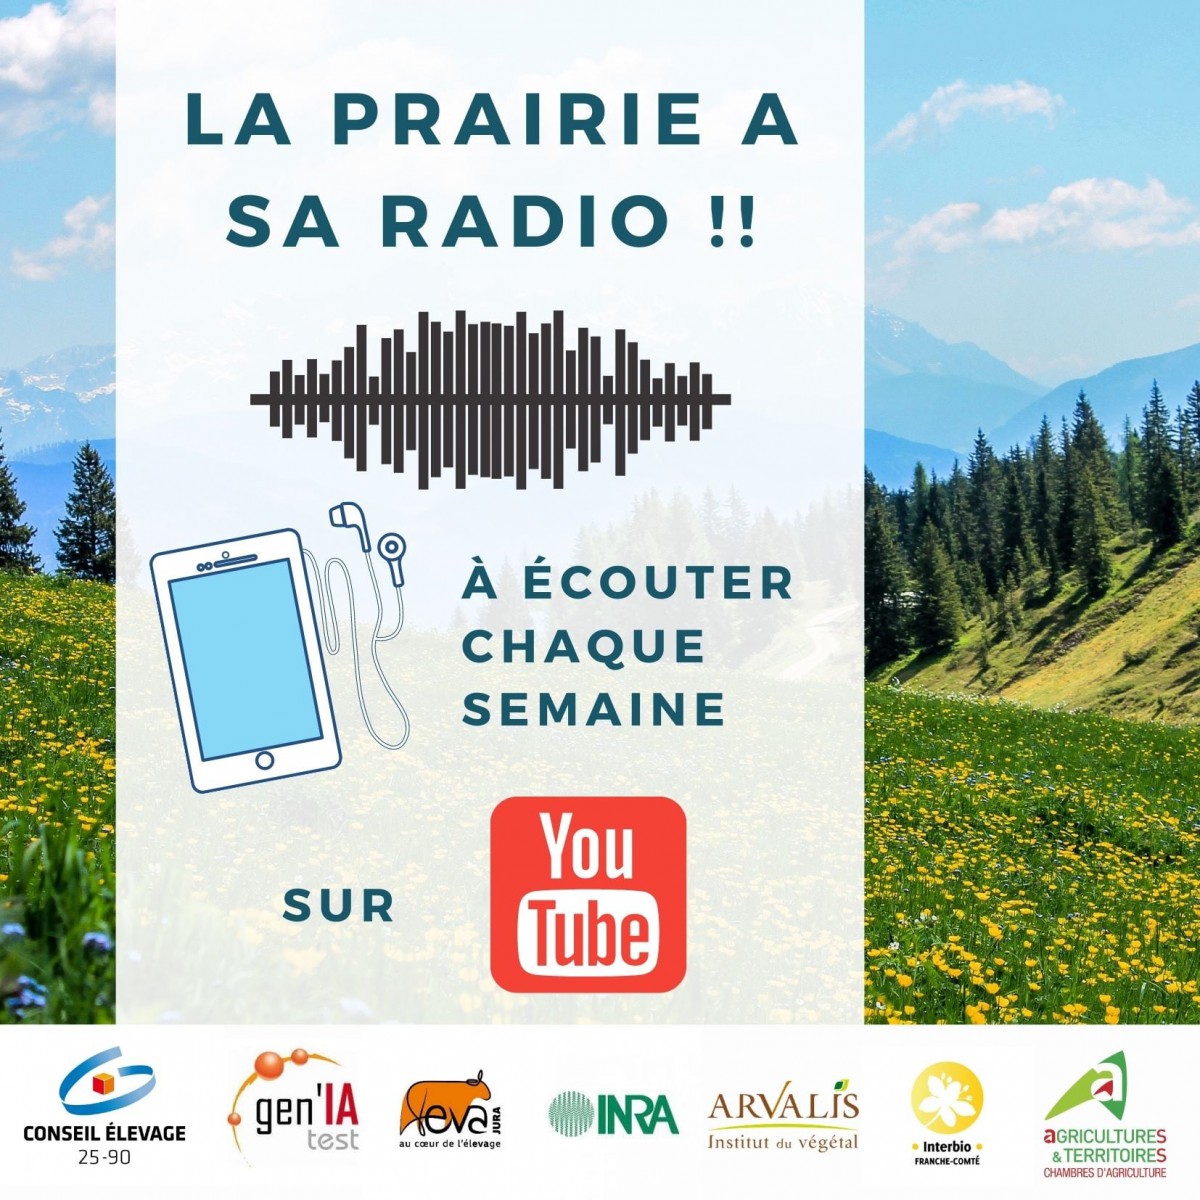 Radio Prairies #saison2 : la prairie a sa radio !